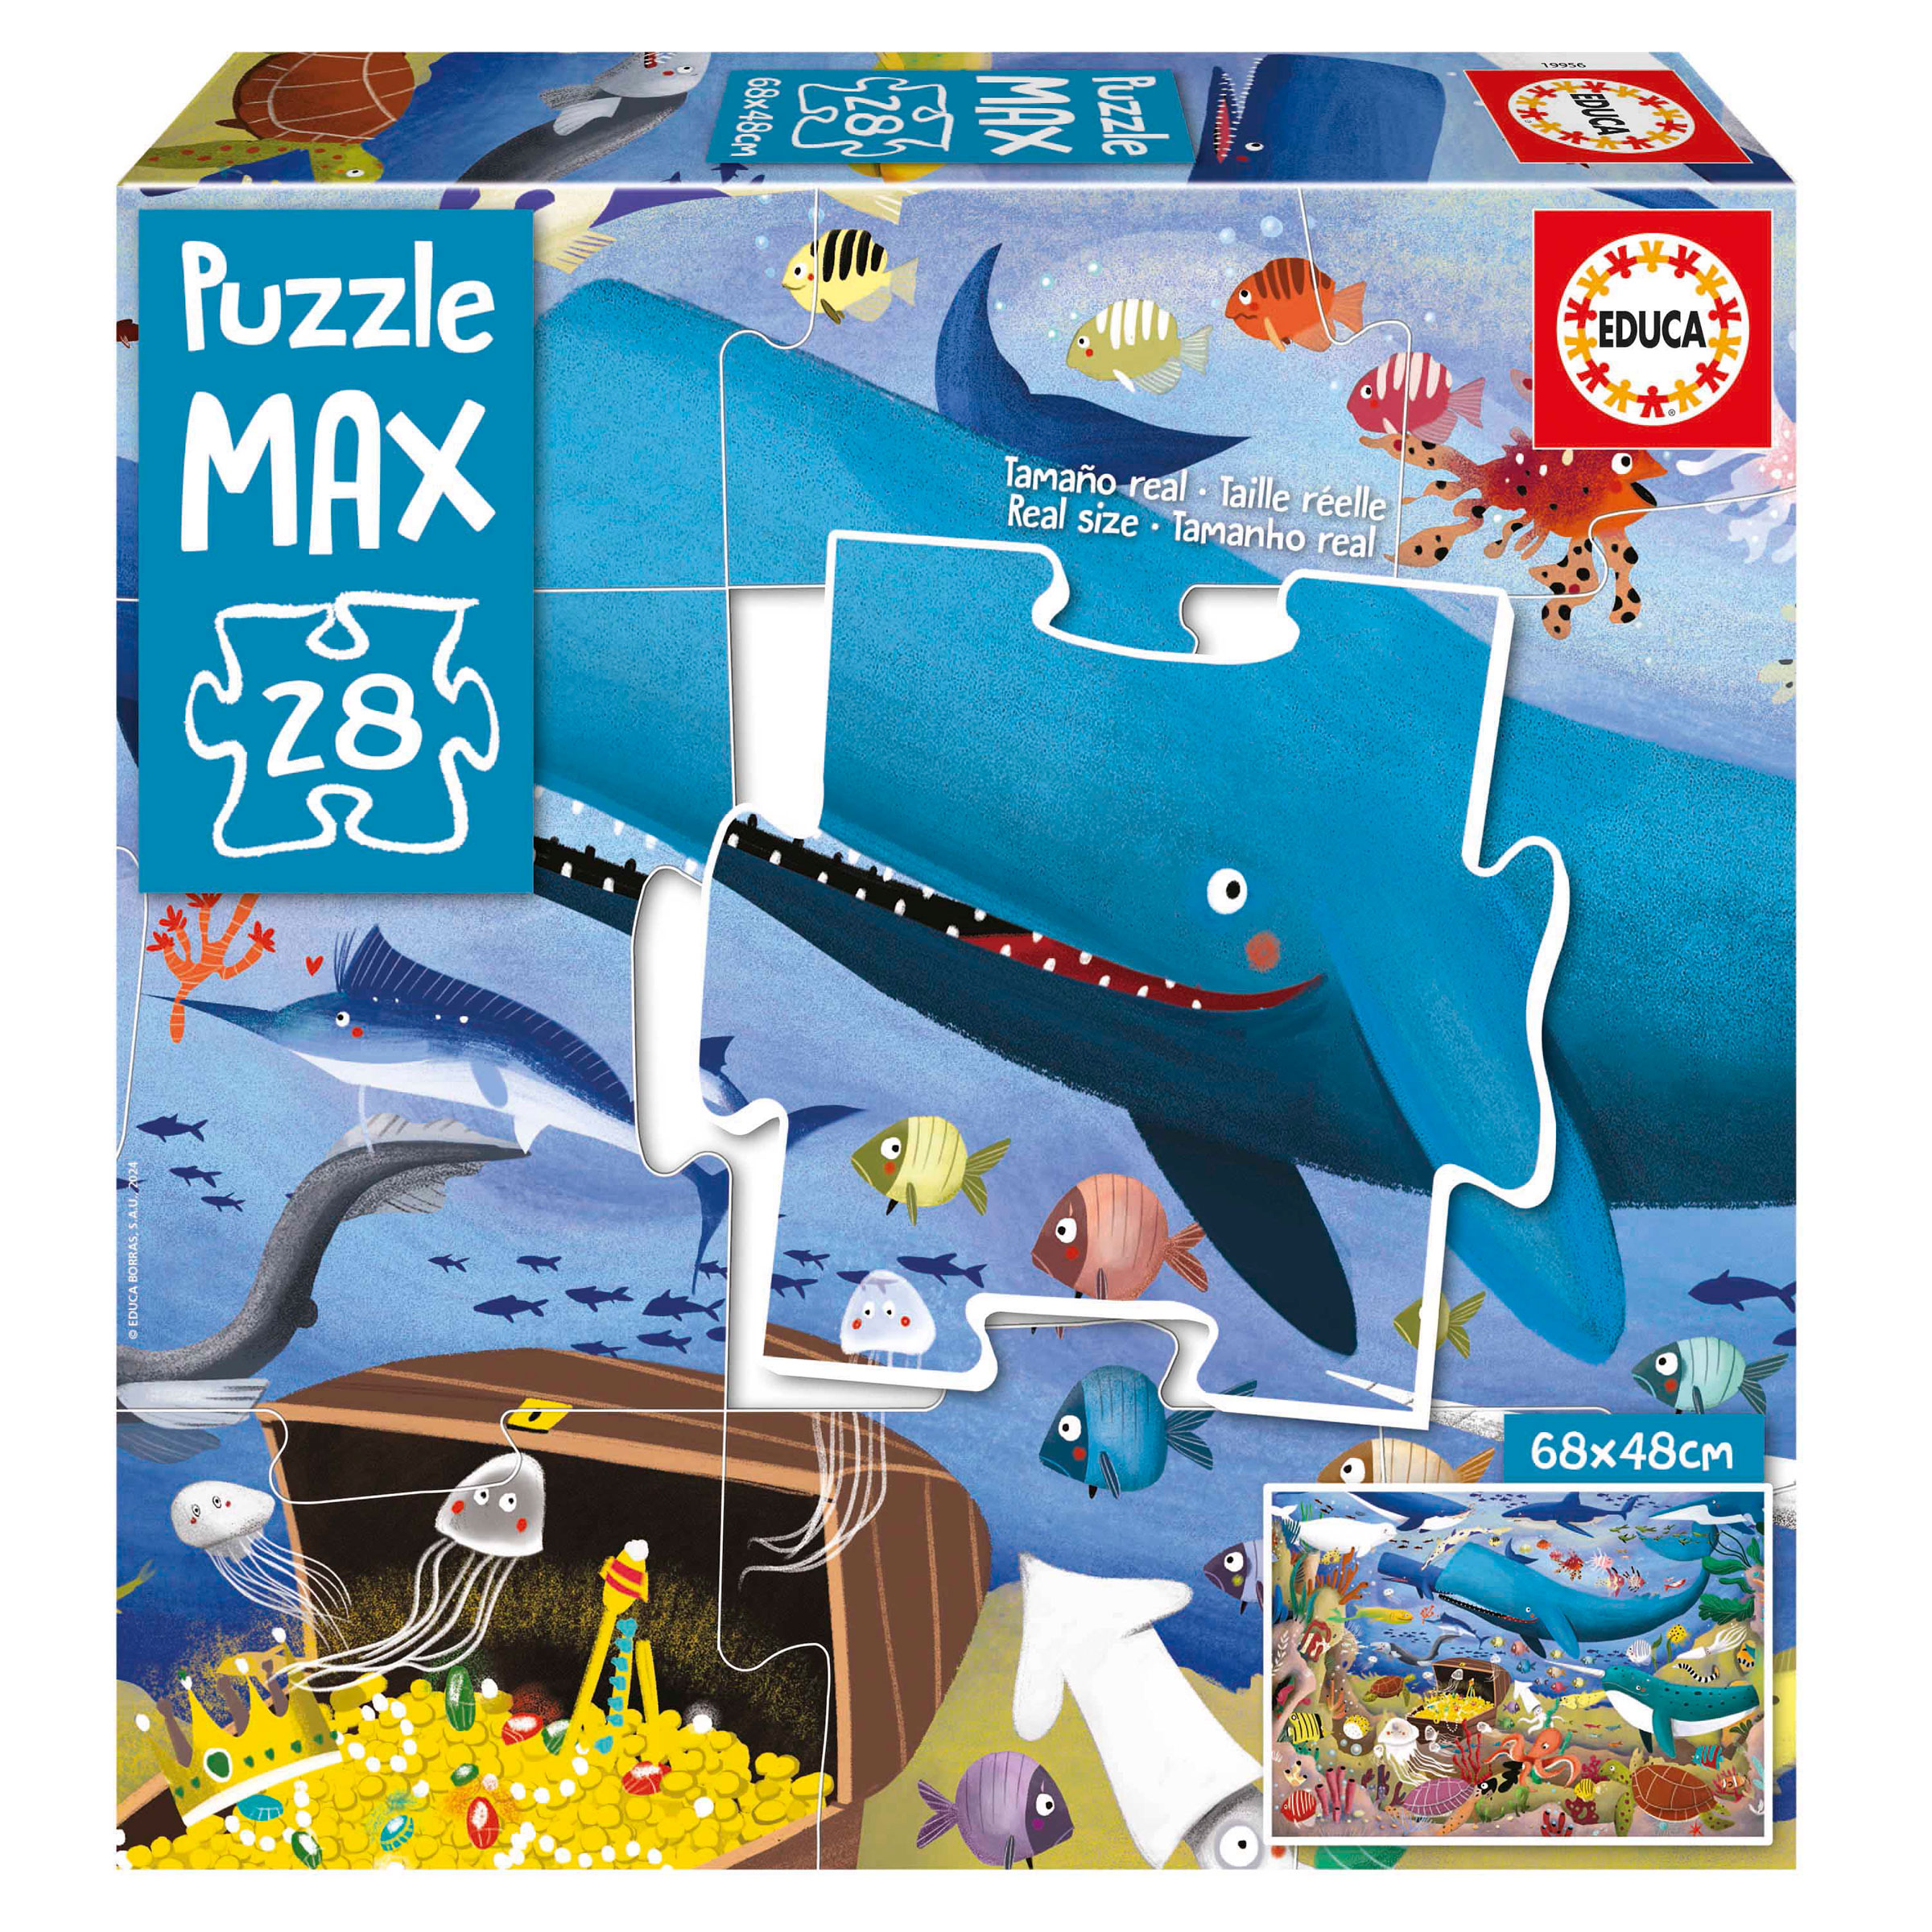 28 Under The Sea Animals Puzzle Max